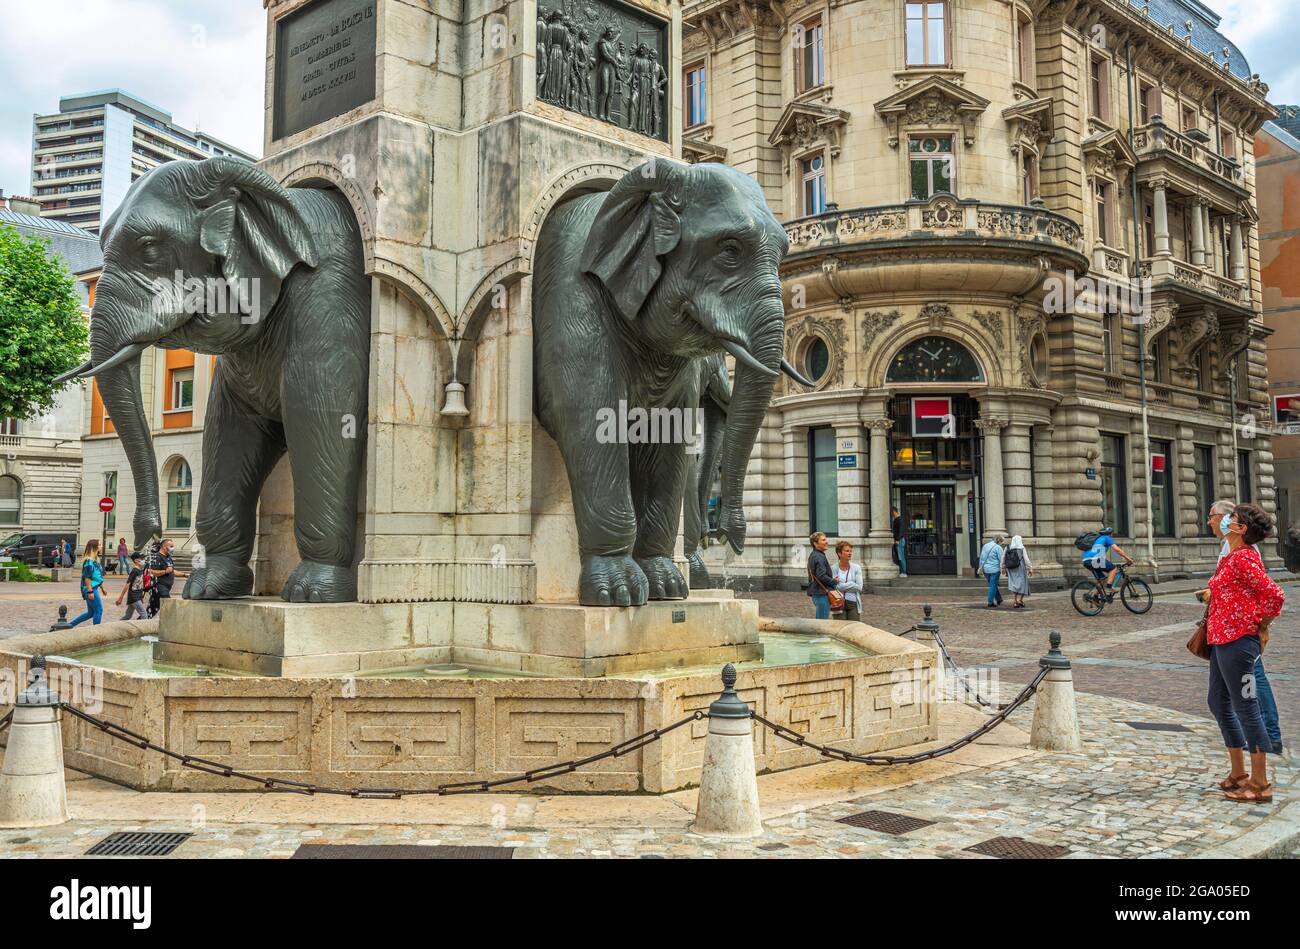 Fontana degli Elefanti, fontana commemorativa del 1838, nella piazza degli Elefanti a Chambery. Chambery, regione Auvergne-Rhône-Alpes, Francia Foto Stock